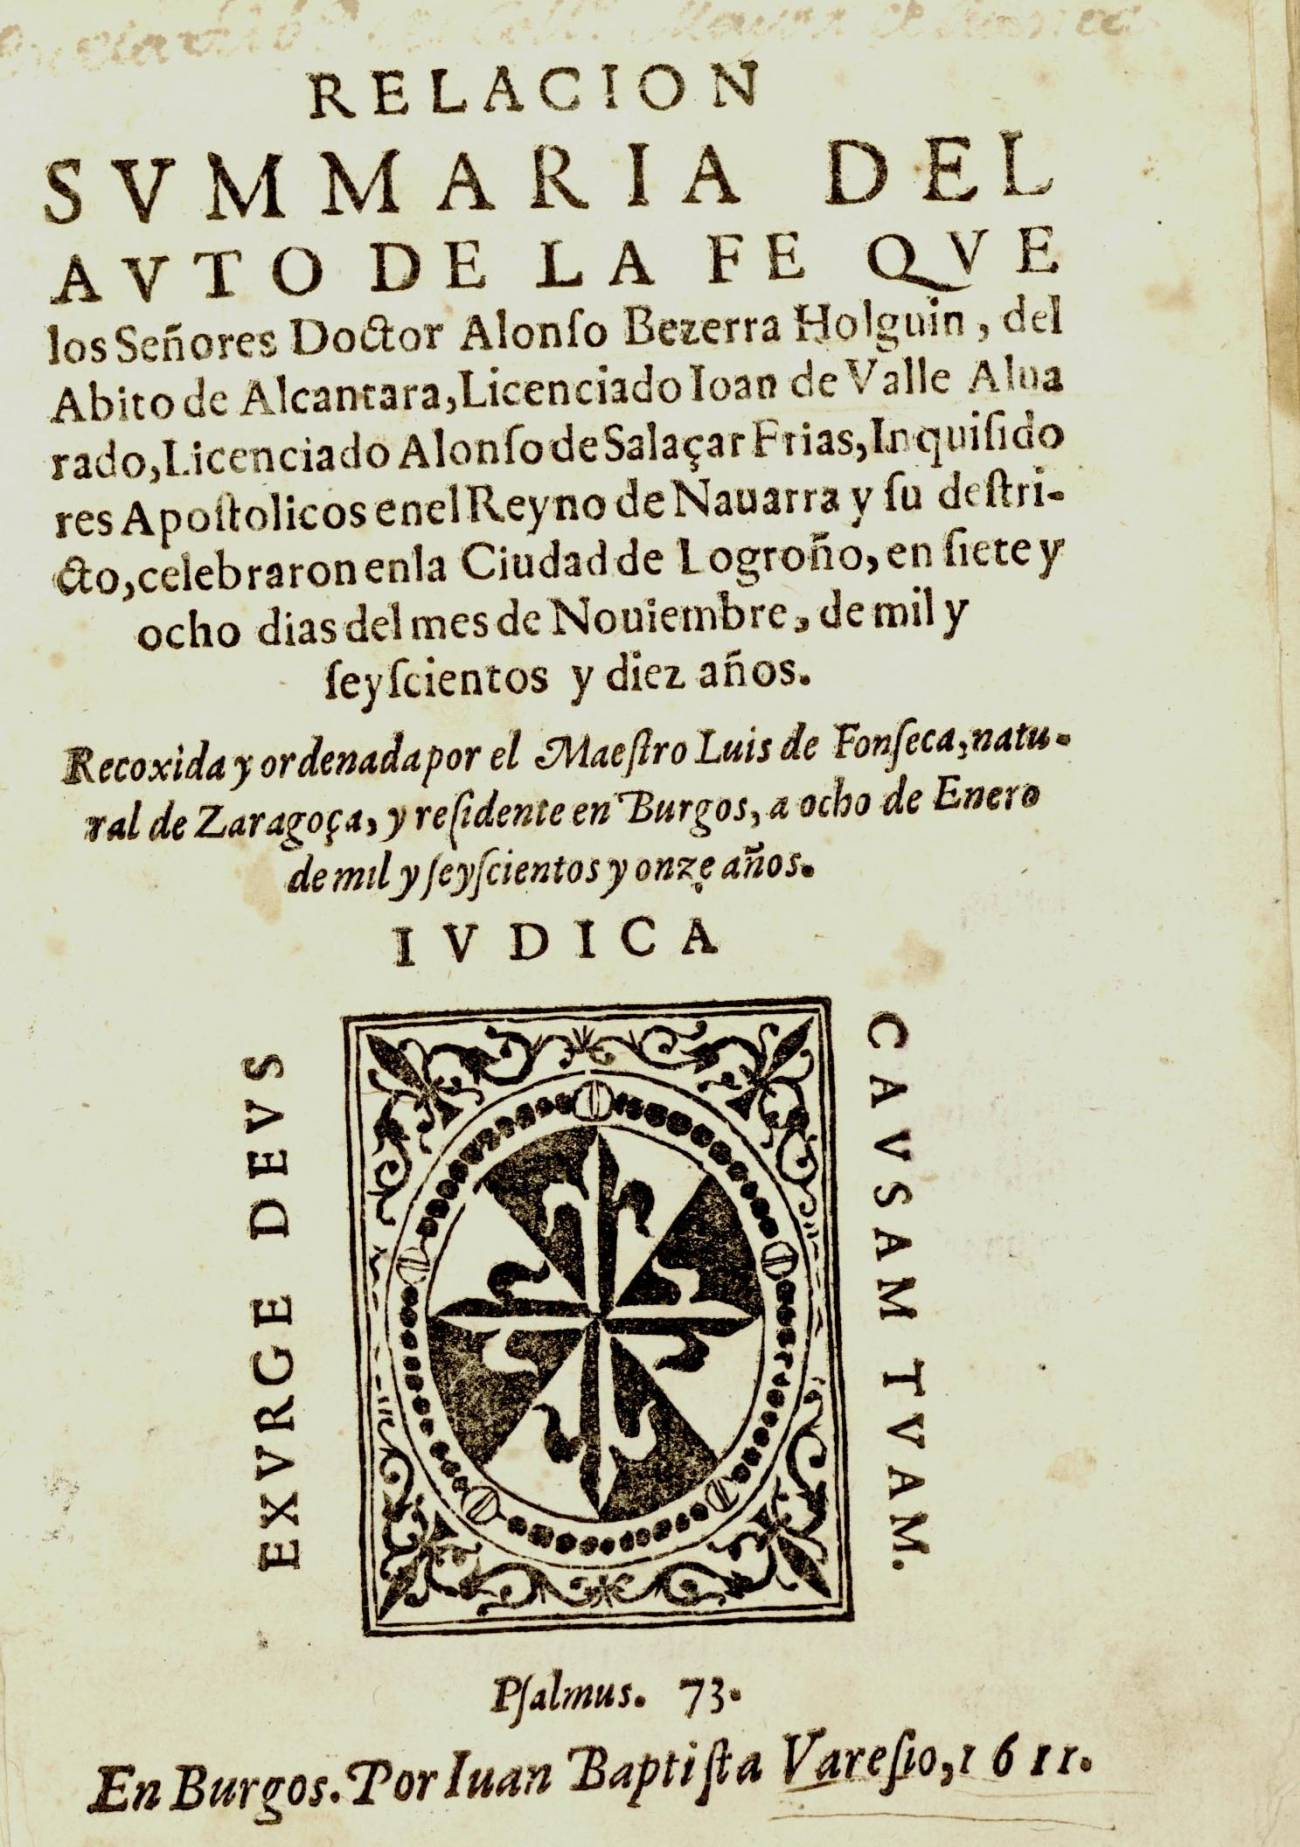 Imagen del libro impreso en Burgos en 1611